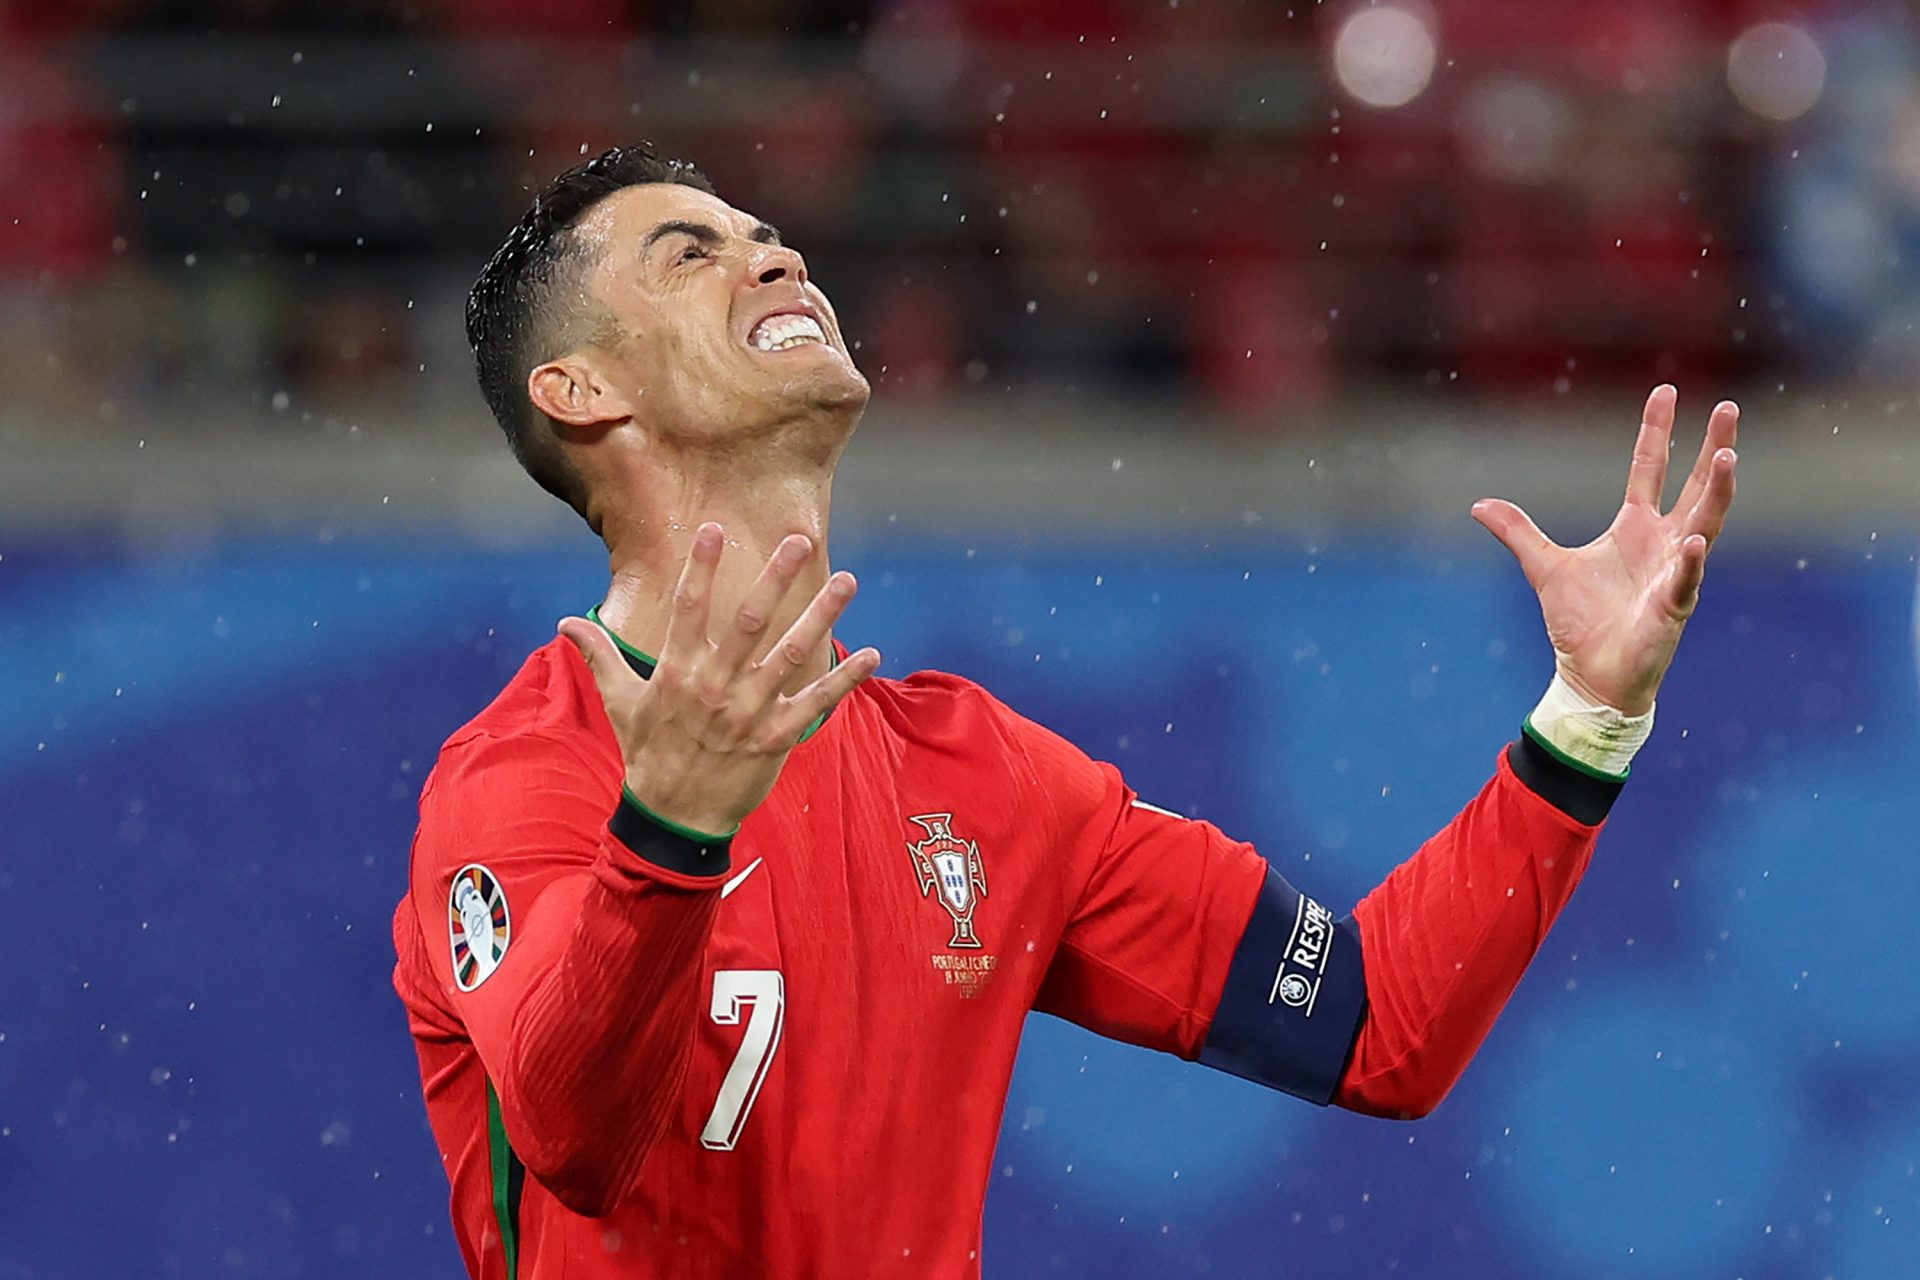 Veel kritiek op Ronaldo en omstreden winst Portugal op Tsjechië